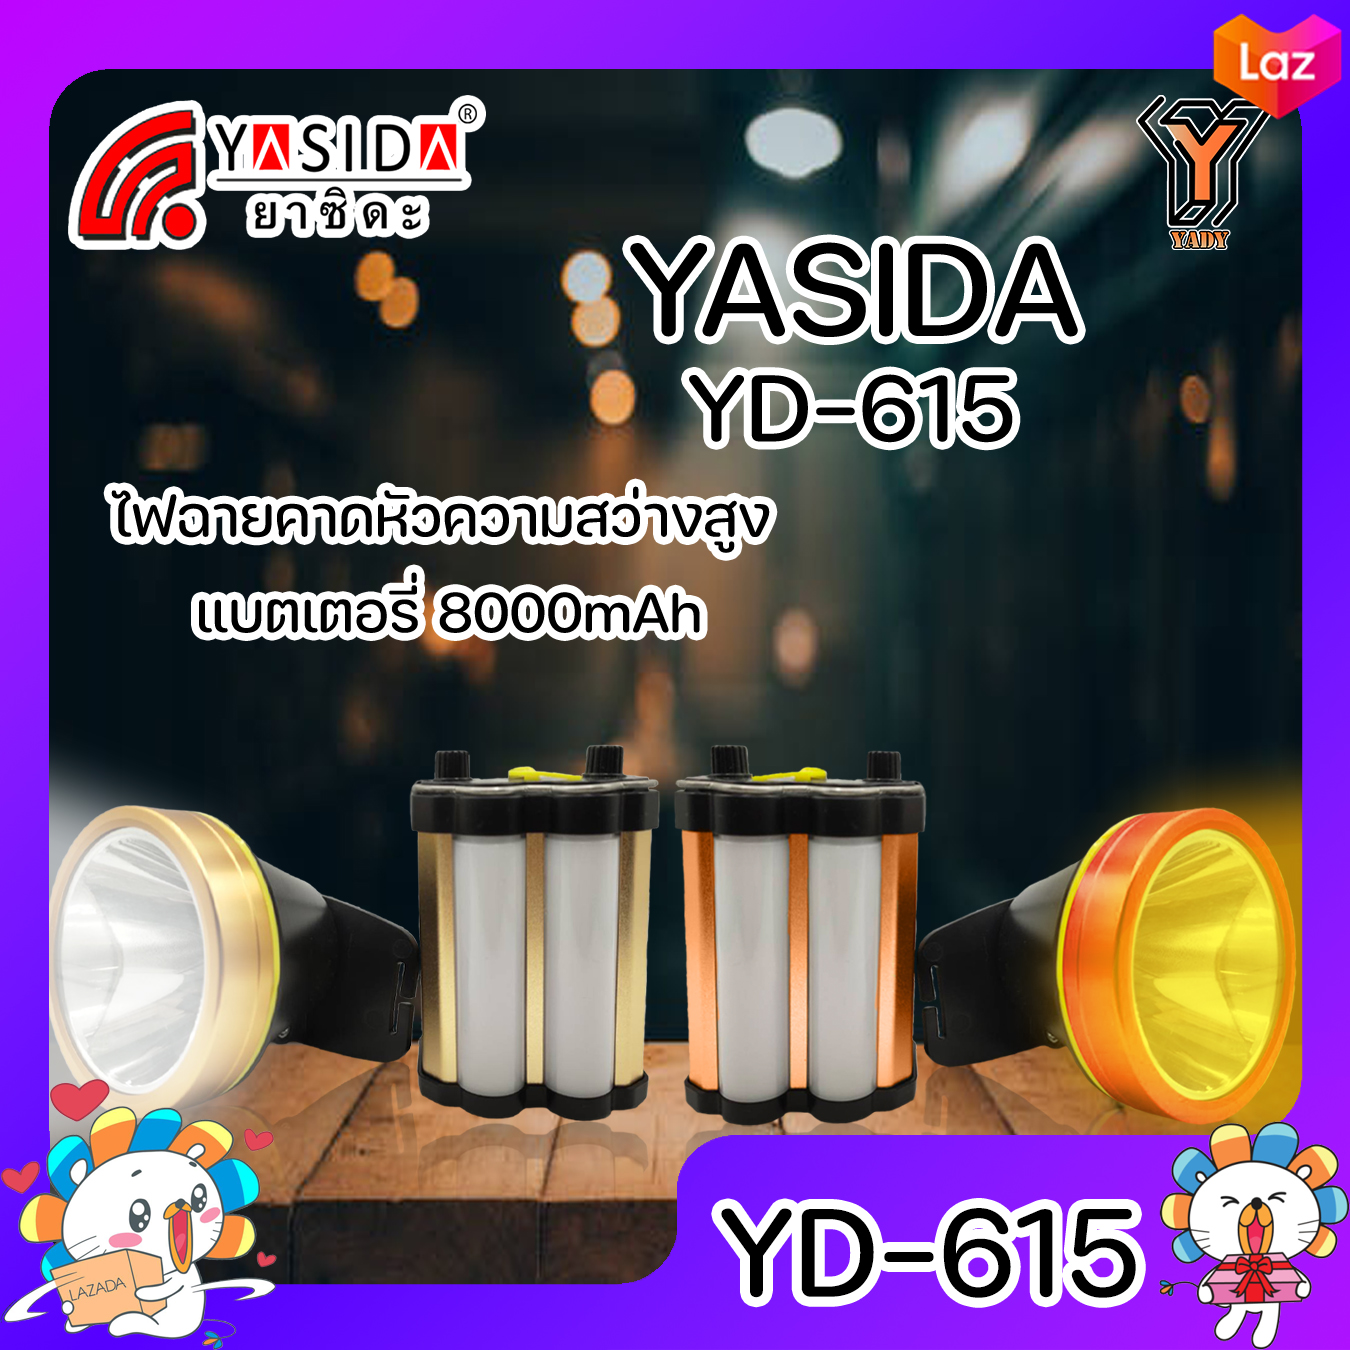 มุมมองเพิ่มเติมของสินค้า YASIDA YD-615 ไฟฉายคาดหัว พกพาง่าย YD 615 ไฟฉาย ความสว่าง 25W+20SMD ความสว่างสูง แบตแยก 8000mAh ใช้งานกลางแจ้ง